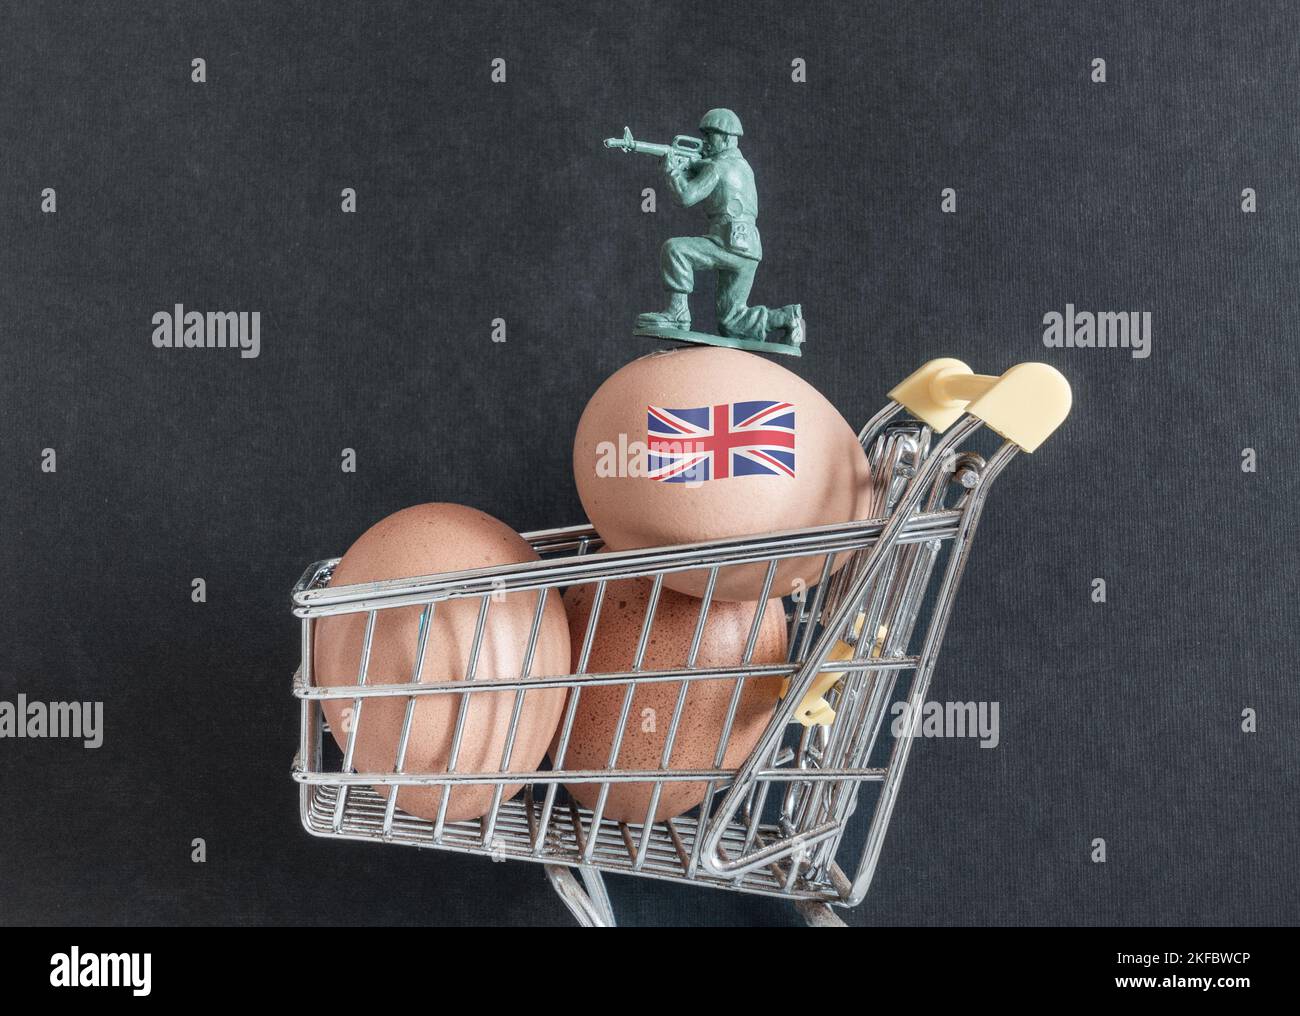 Eier im Einkaufswagen mit Soldaten, die wertvolle Güter bewachen. Eiermangel, steigende Eierpreise, Inflation, Lebenshaltungskosten... Konzept Stockfoto